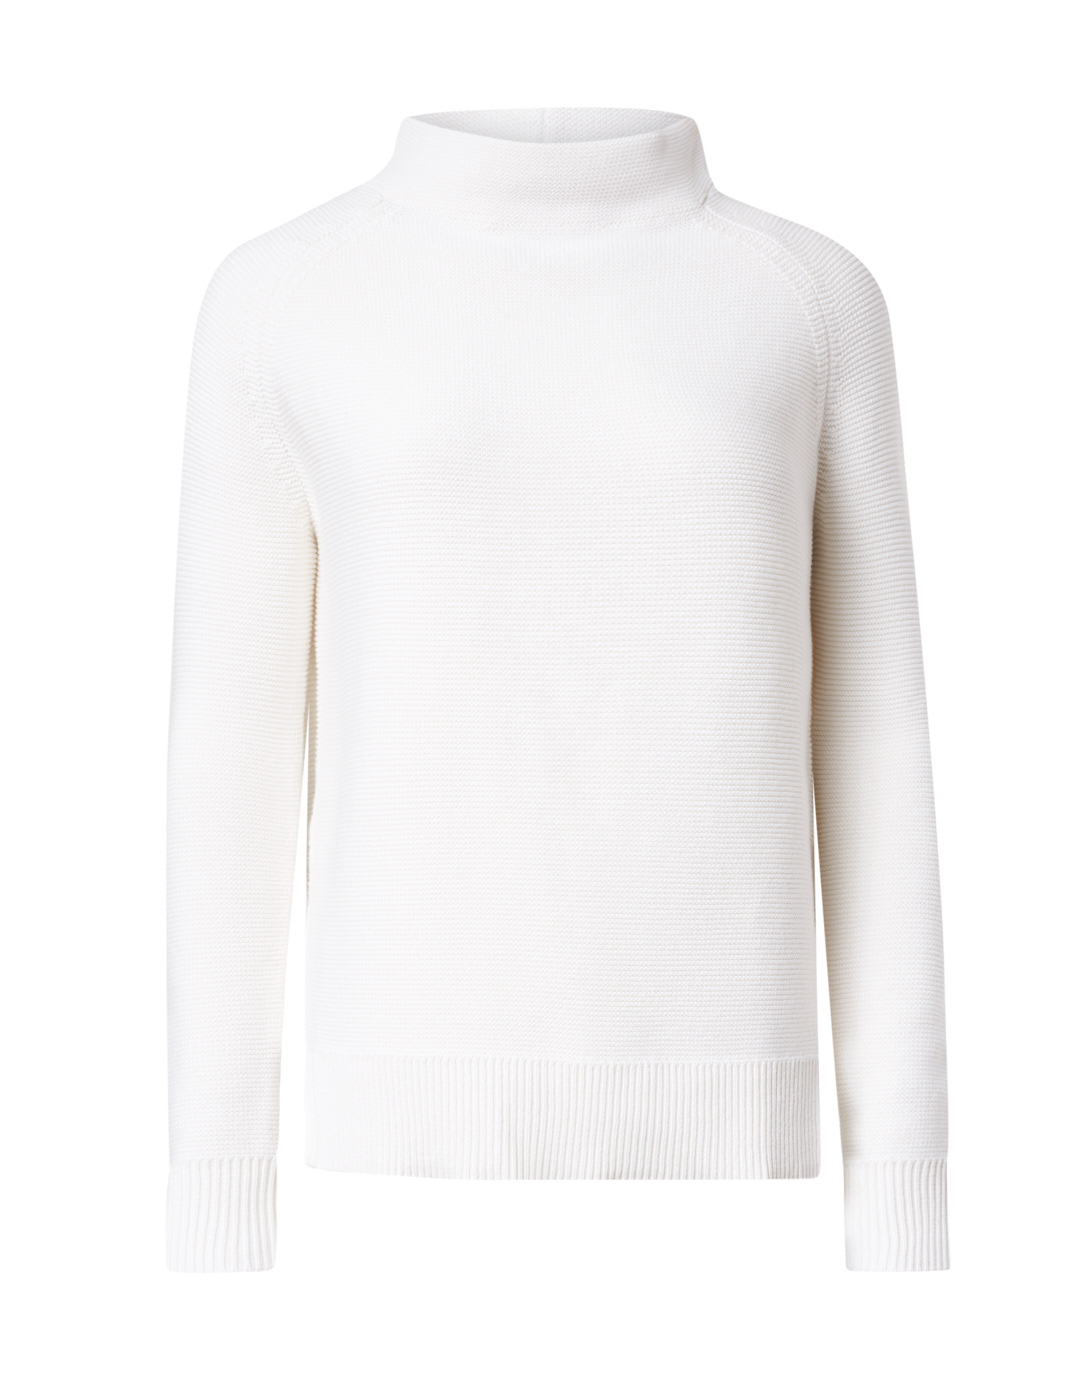 White Garter Stitch Cotton Sweater